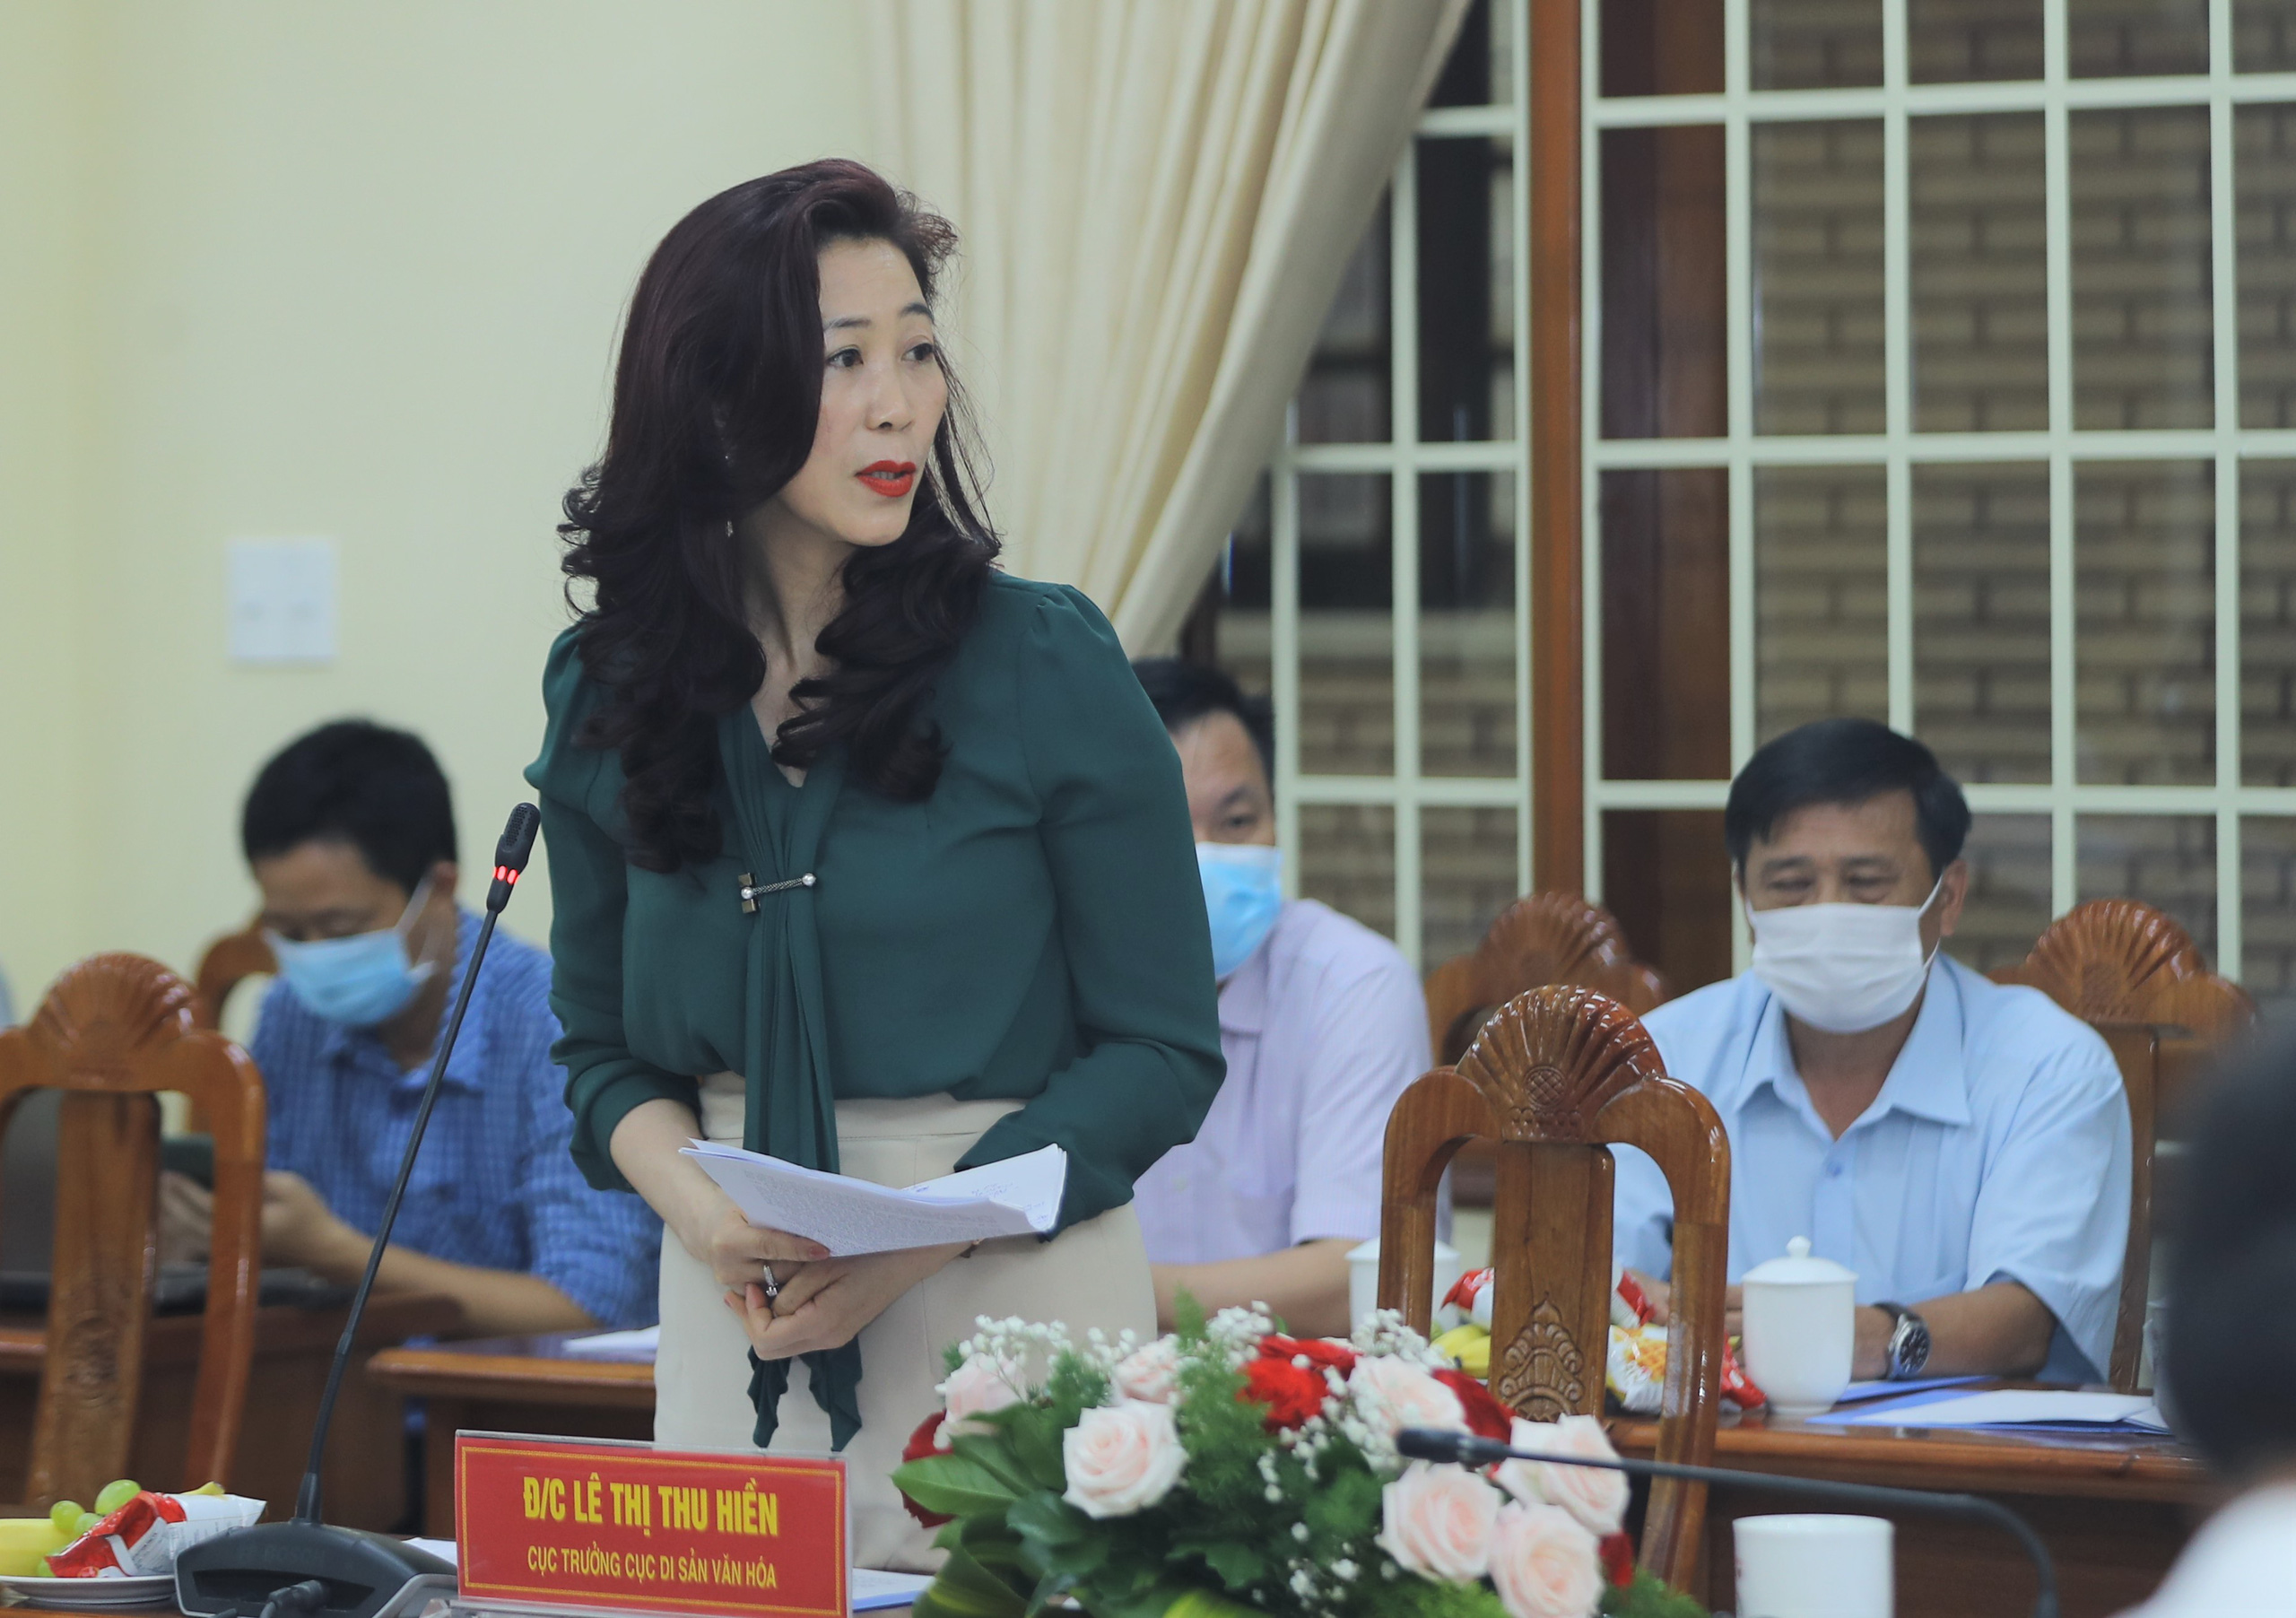 Bộ trưởng Nguyễn Văn Hùng: “Kon Tum có quang cảnh đẹp, sao không mạnh dạn đặt ước mơ trở thành trung tâm hội nghị của khu vực miền Trung-Tây Nguyên” - Ảnh 7.